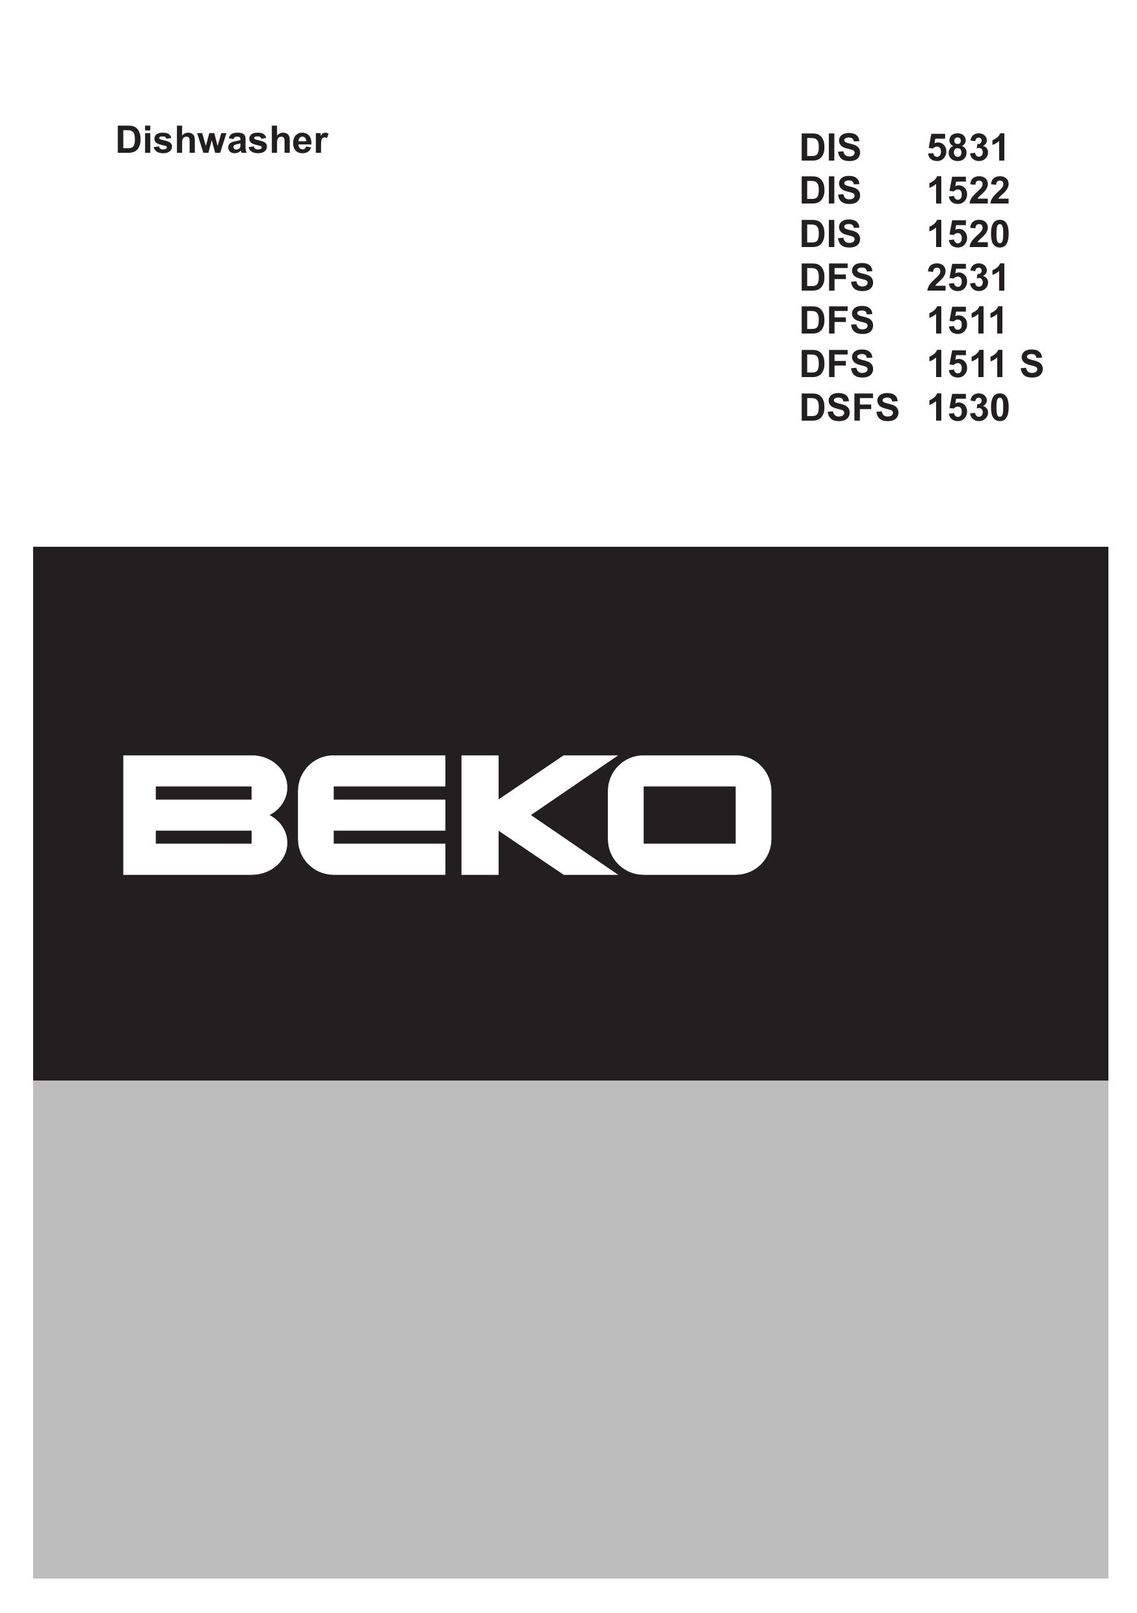 Beko DIS 5831 Dishwasher User Manual